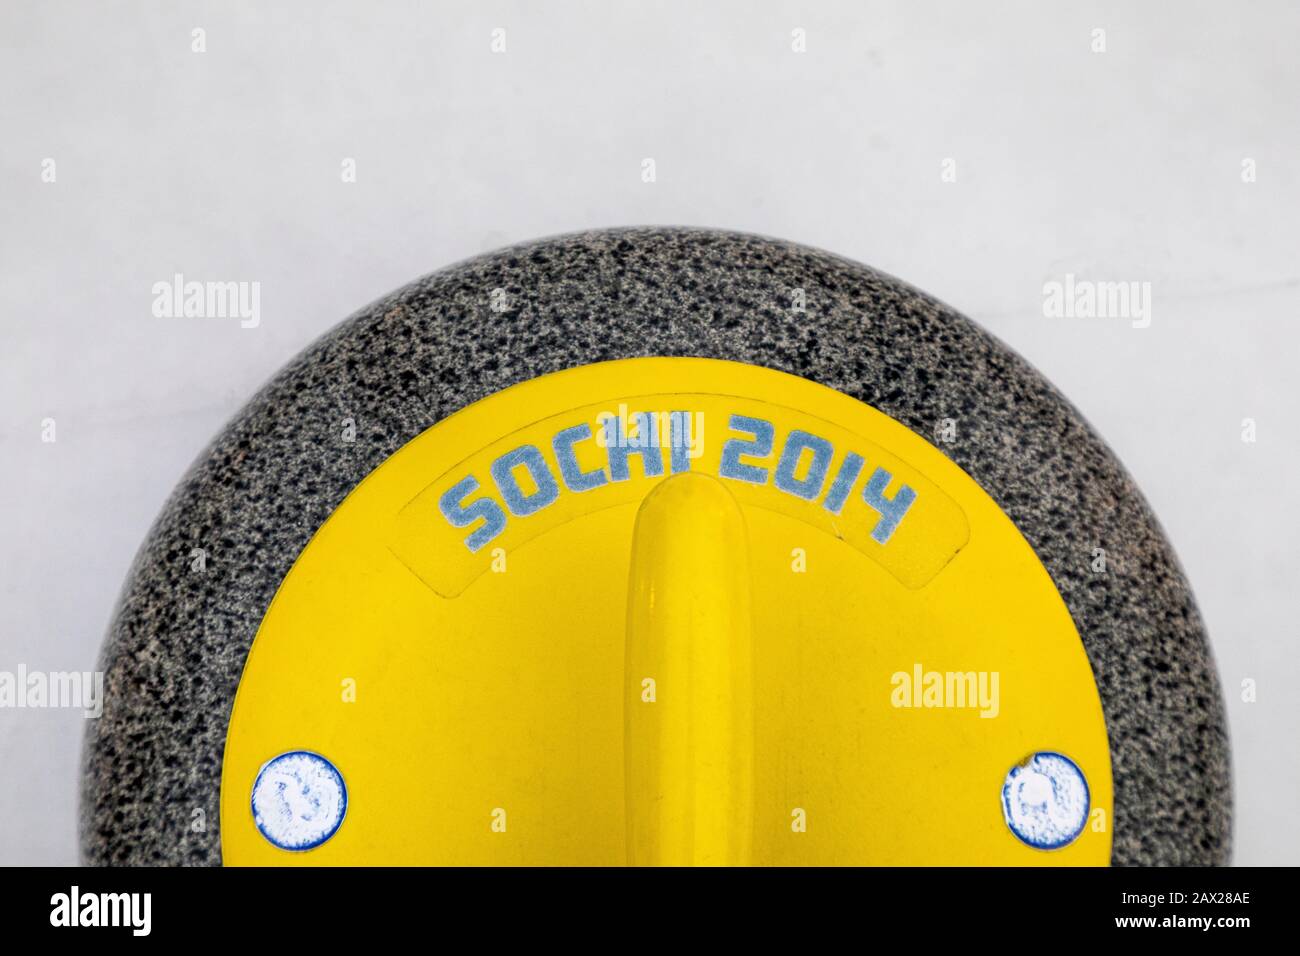 Draufsicht auf einen gelben Stein aus Granit zum Curling mit der Aufschrift 'Sochi 2014' Stockfoto